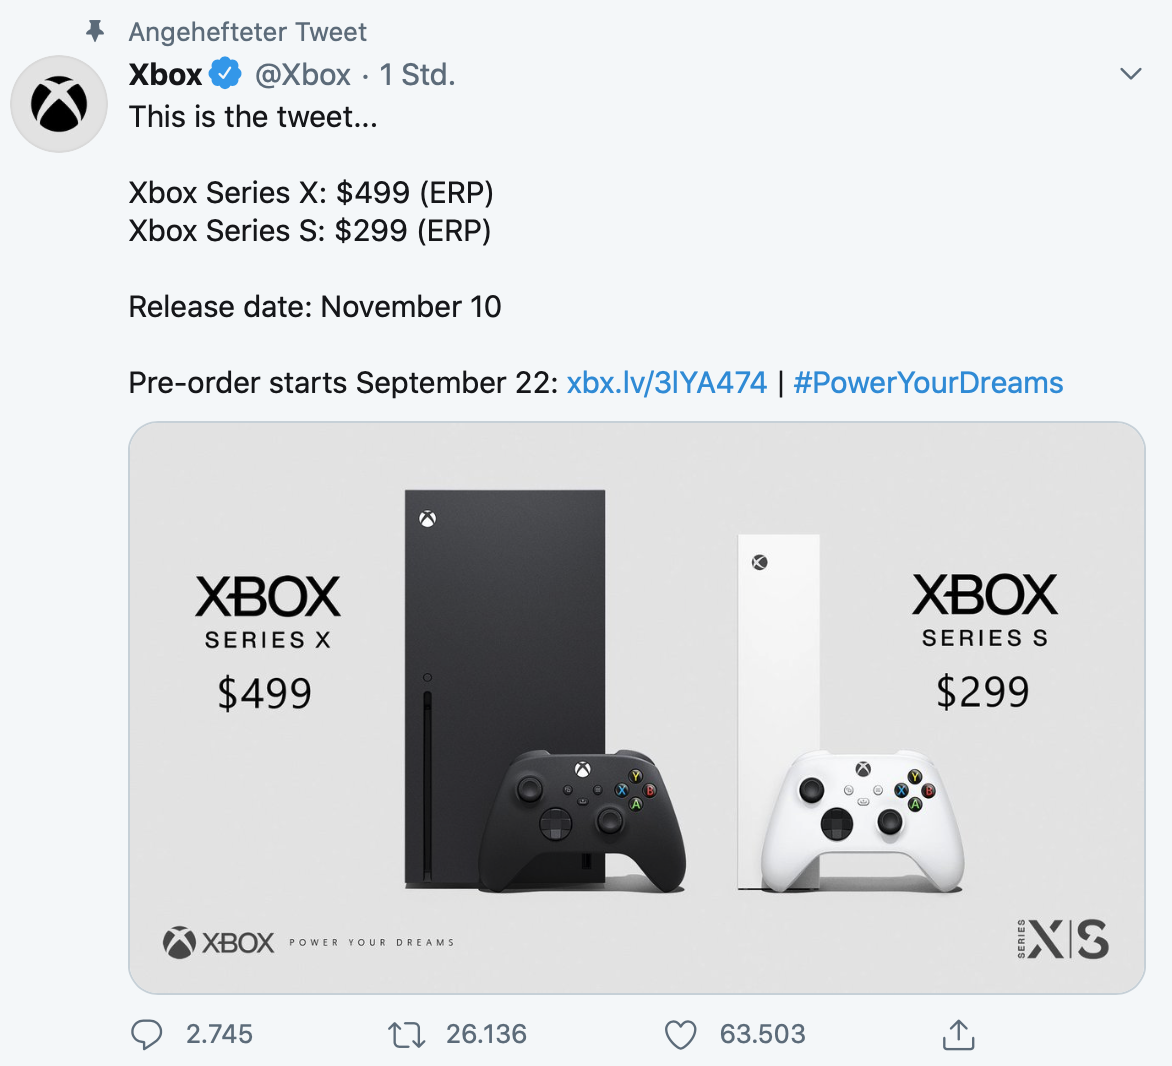 Xbox series x схема